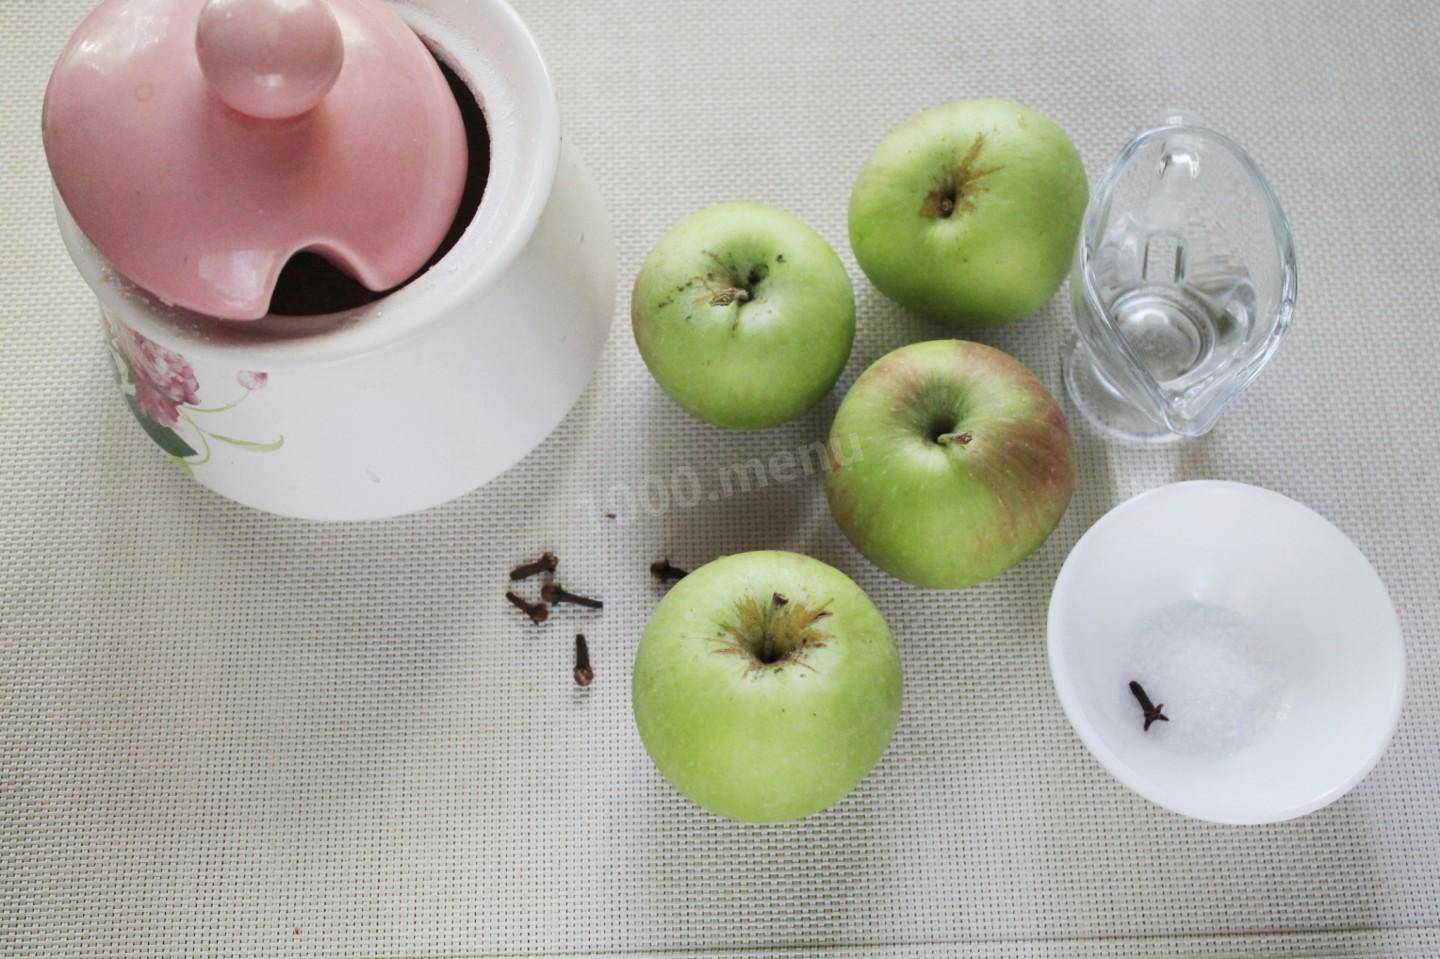 Заготовки из яблок на зиму — рецепты, богатое разнообразие вариаций: моченные яблоки, варенье, повидло, джем, пюре и компот